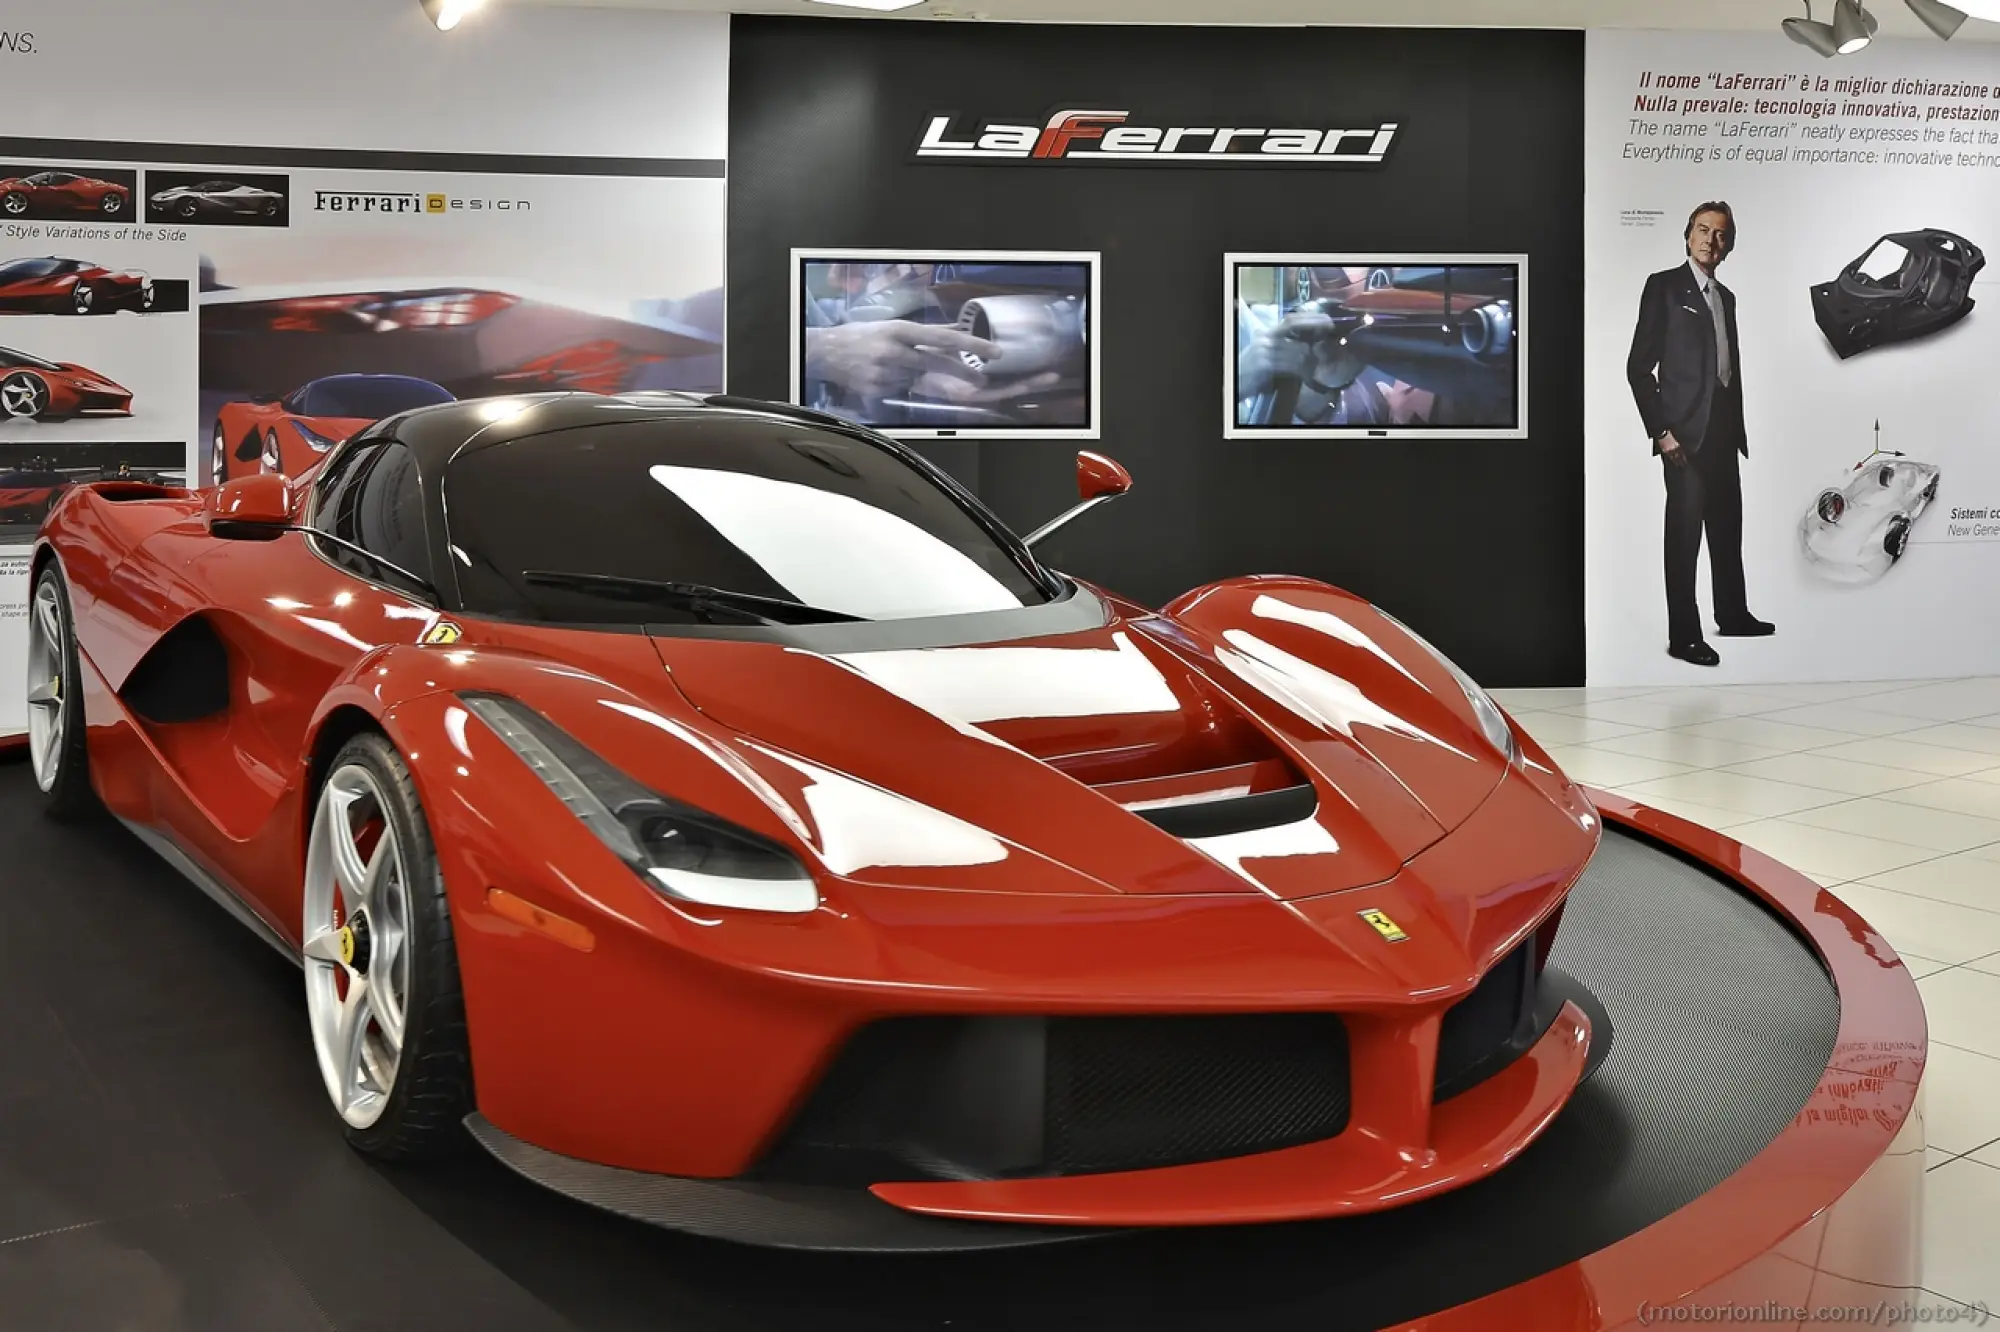 Mostra Ferrari supercar. Tecnica. Design. Mito - 6